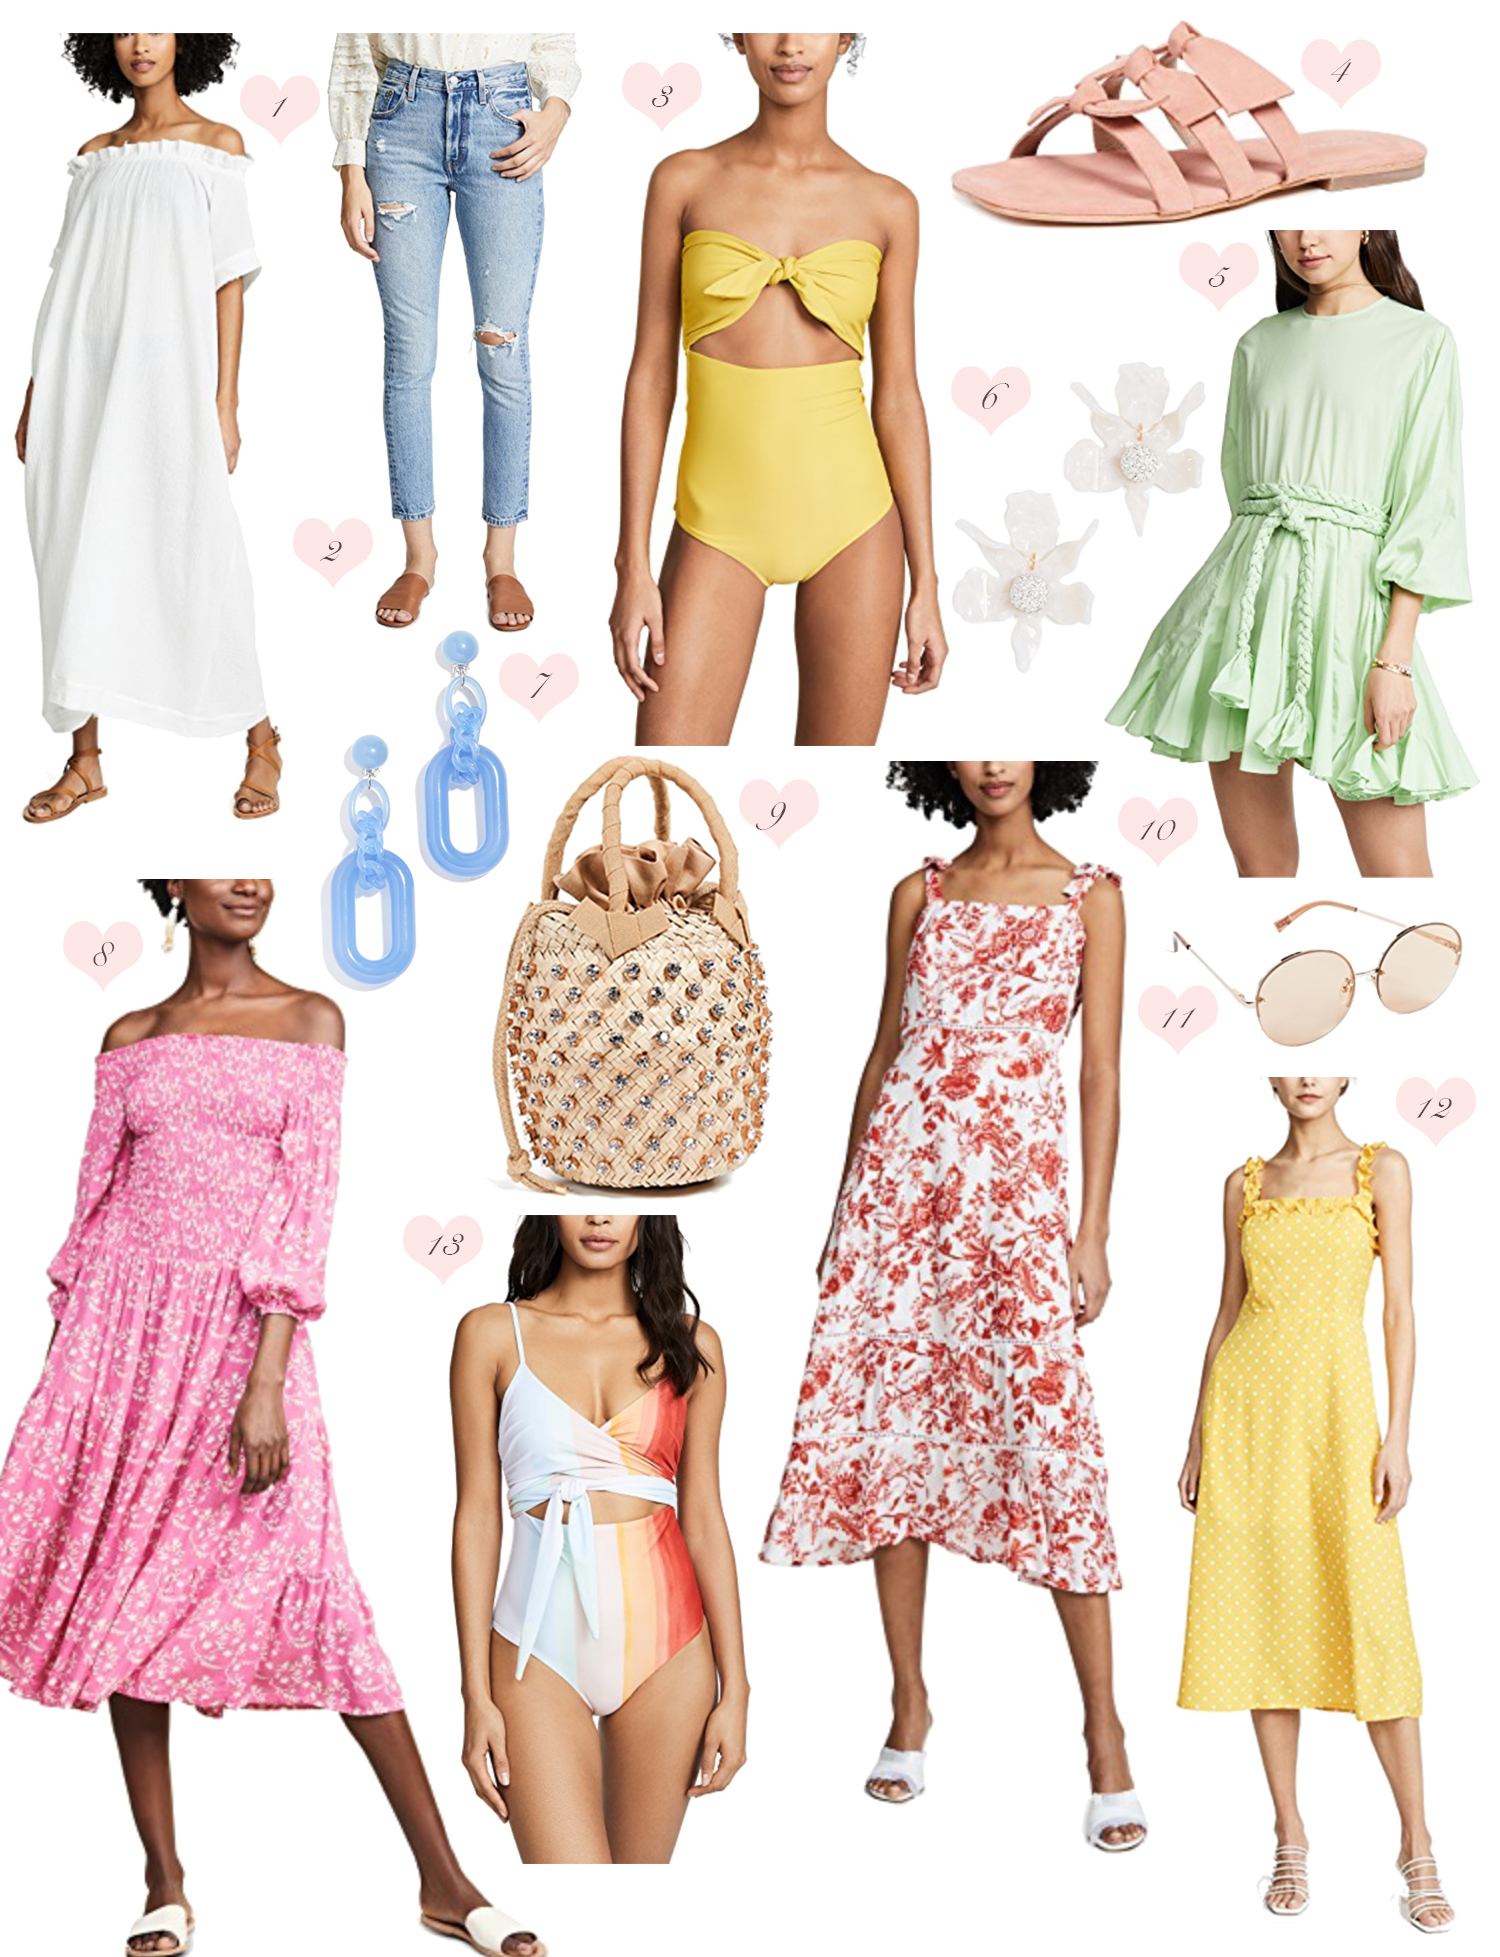 shopbop-sale-2019-lo-murphy-spring-essentials-woven-bag-shopbop